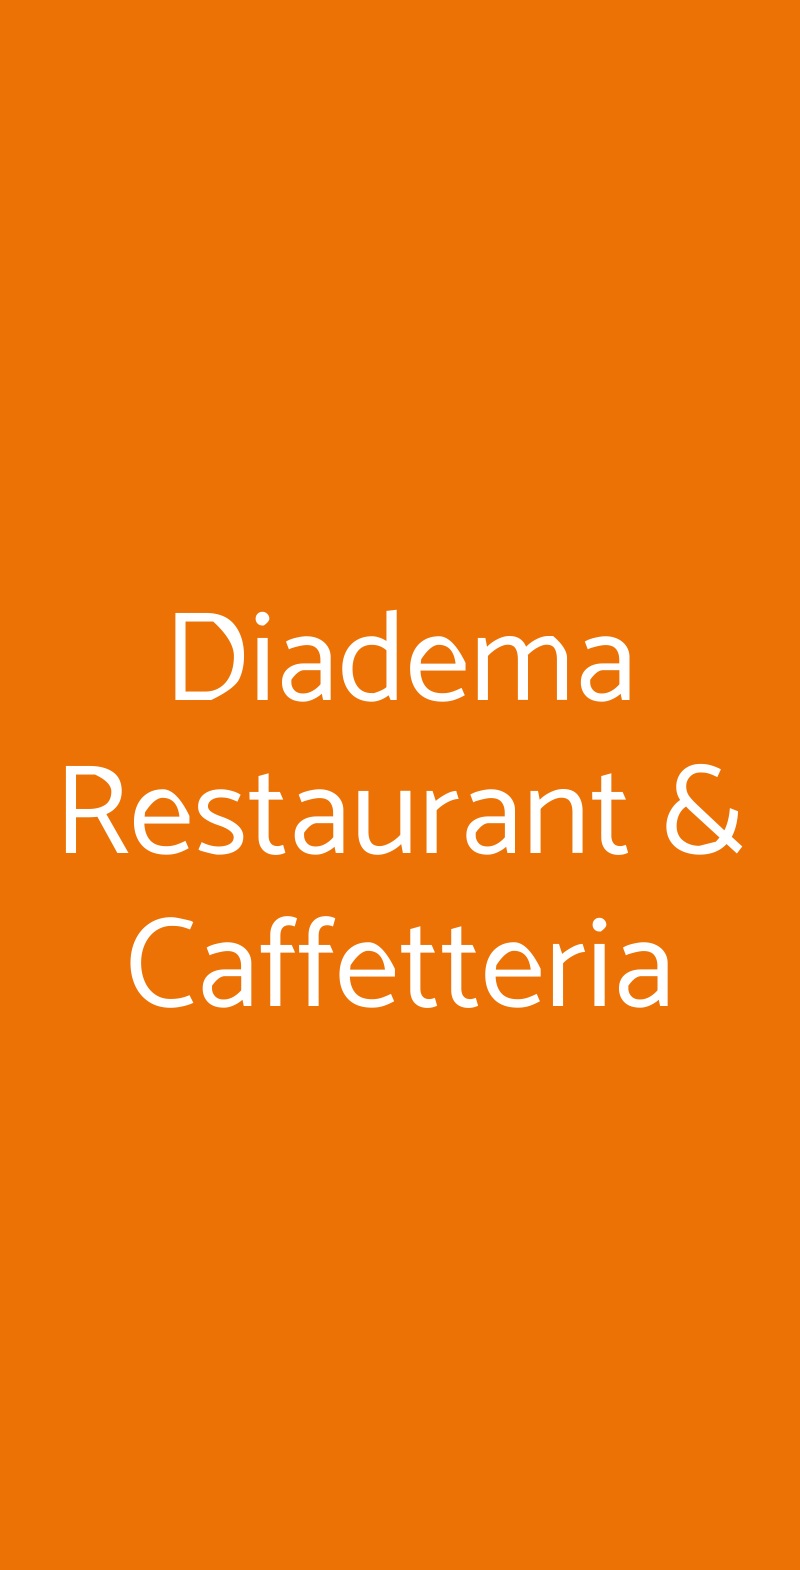 Diadema Restaurant & Caffetteria Roma menù 1 pagina